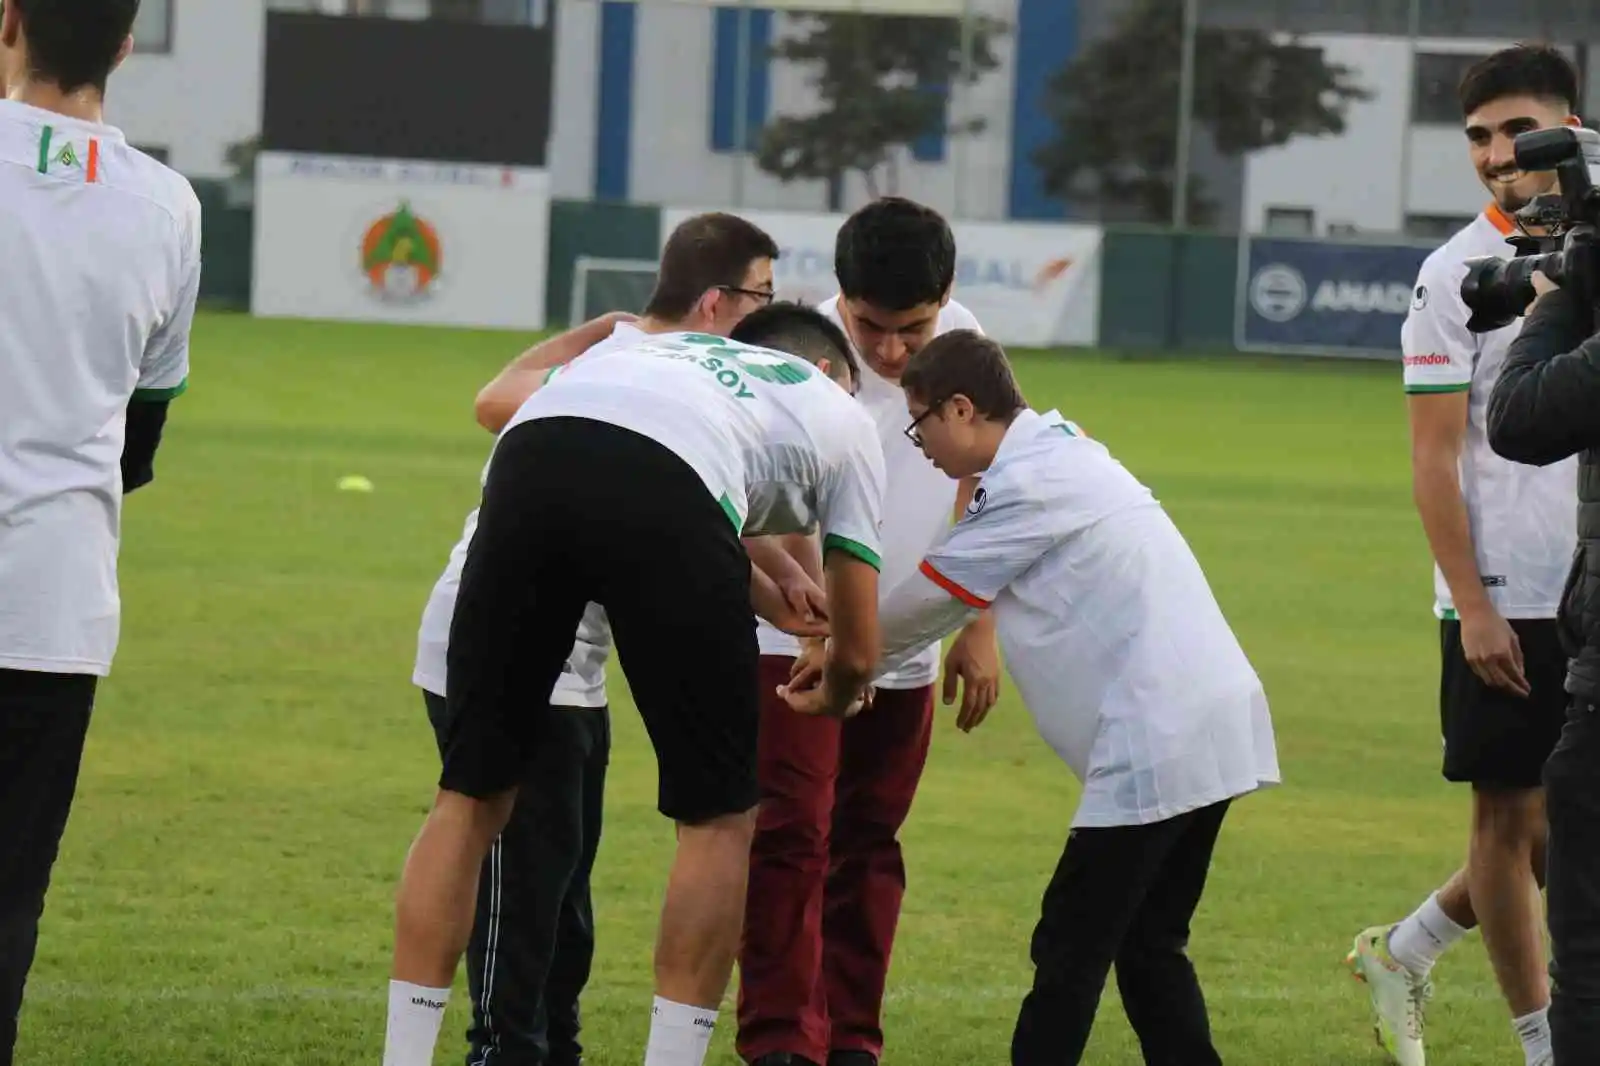 Özel öğrenciler Alanyaspor ile özel maçta buluştu
